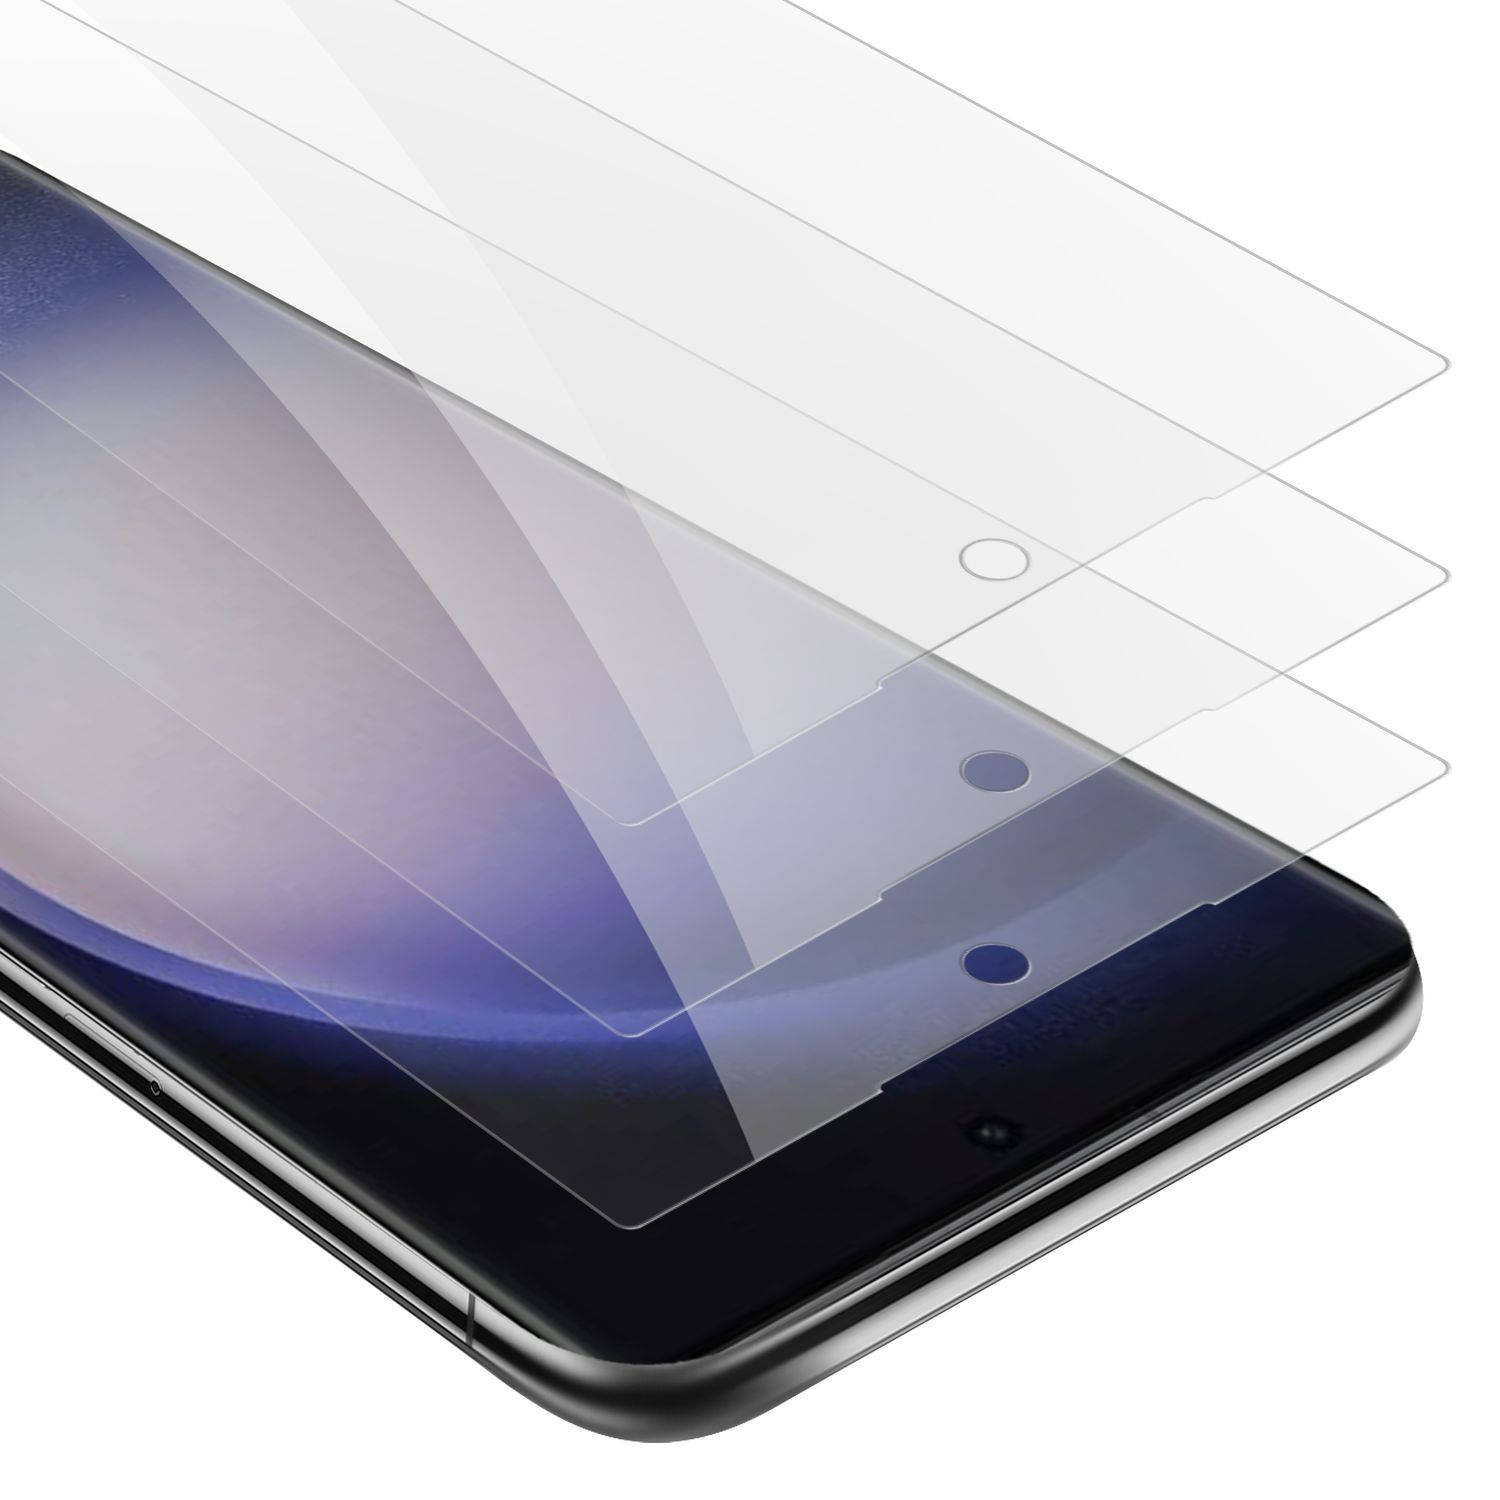 Cadorabo 3x Screenprotector voor Samsung Galaxy S23 ULTRA - Beschermende Pantser Film in KRISTALHELDER - Getemperd (Tempered) Display beschermend glas in 9H hardheid met 3D Touch